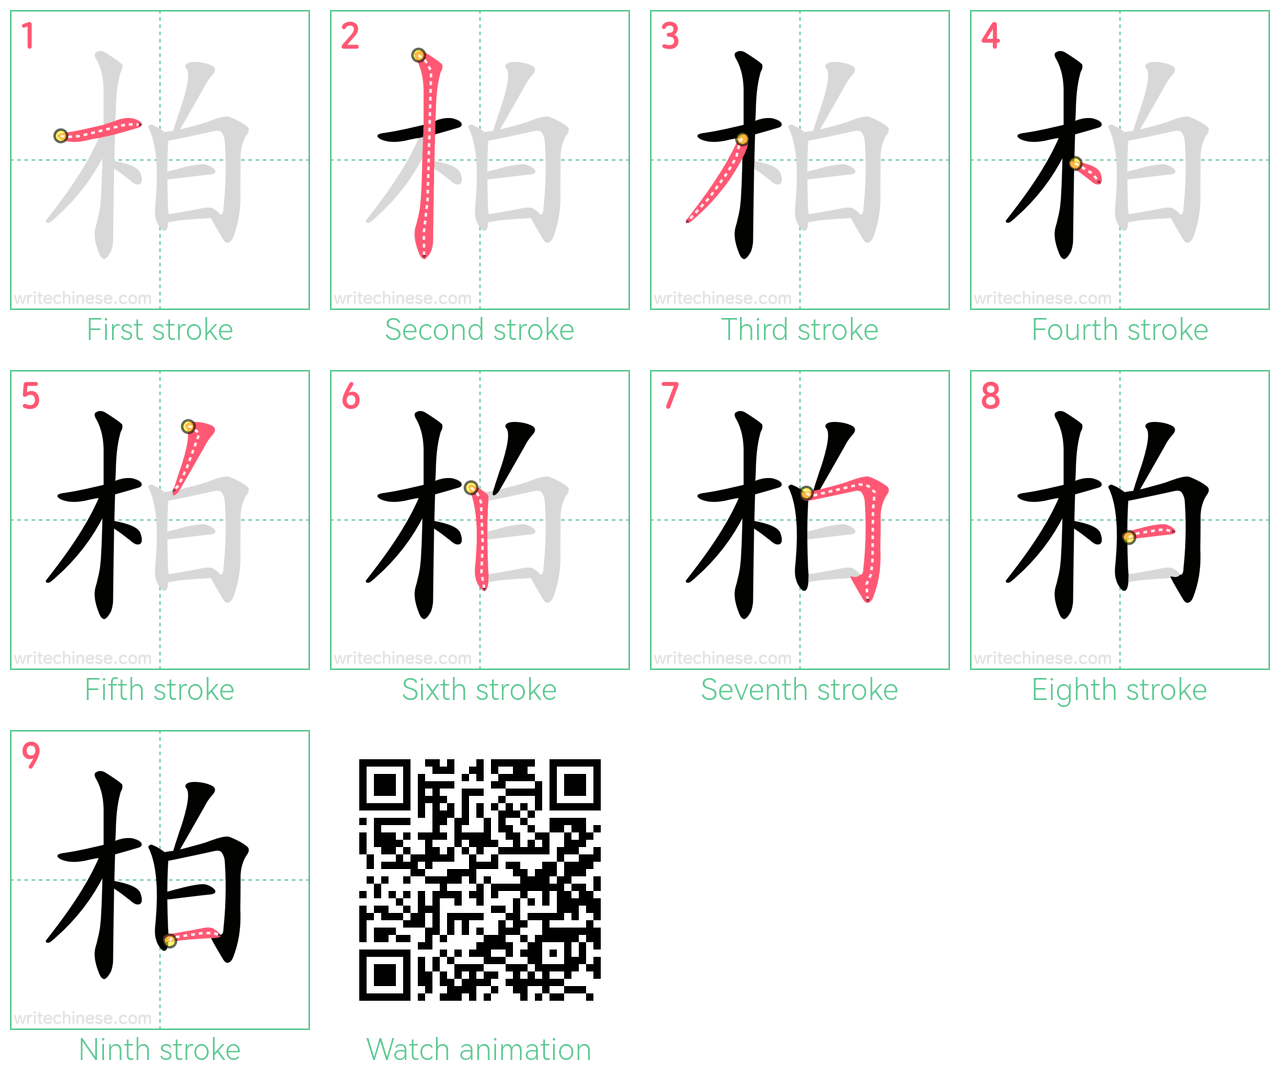 柏 step-by-step stroke order diagrams